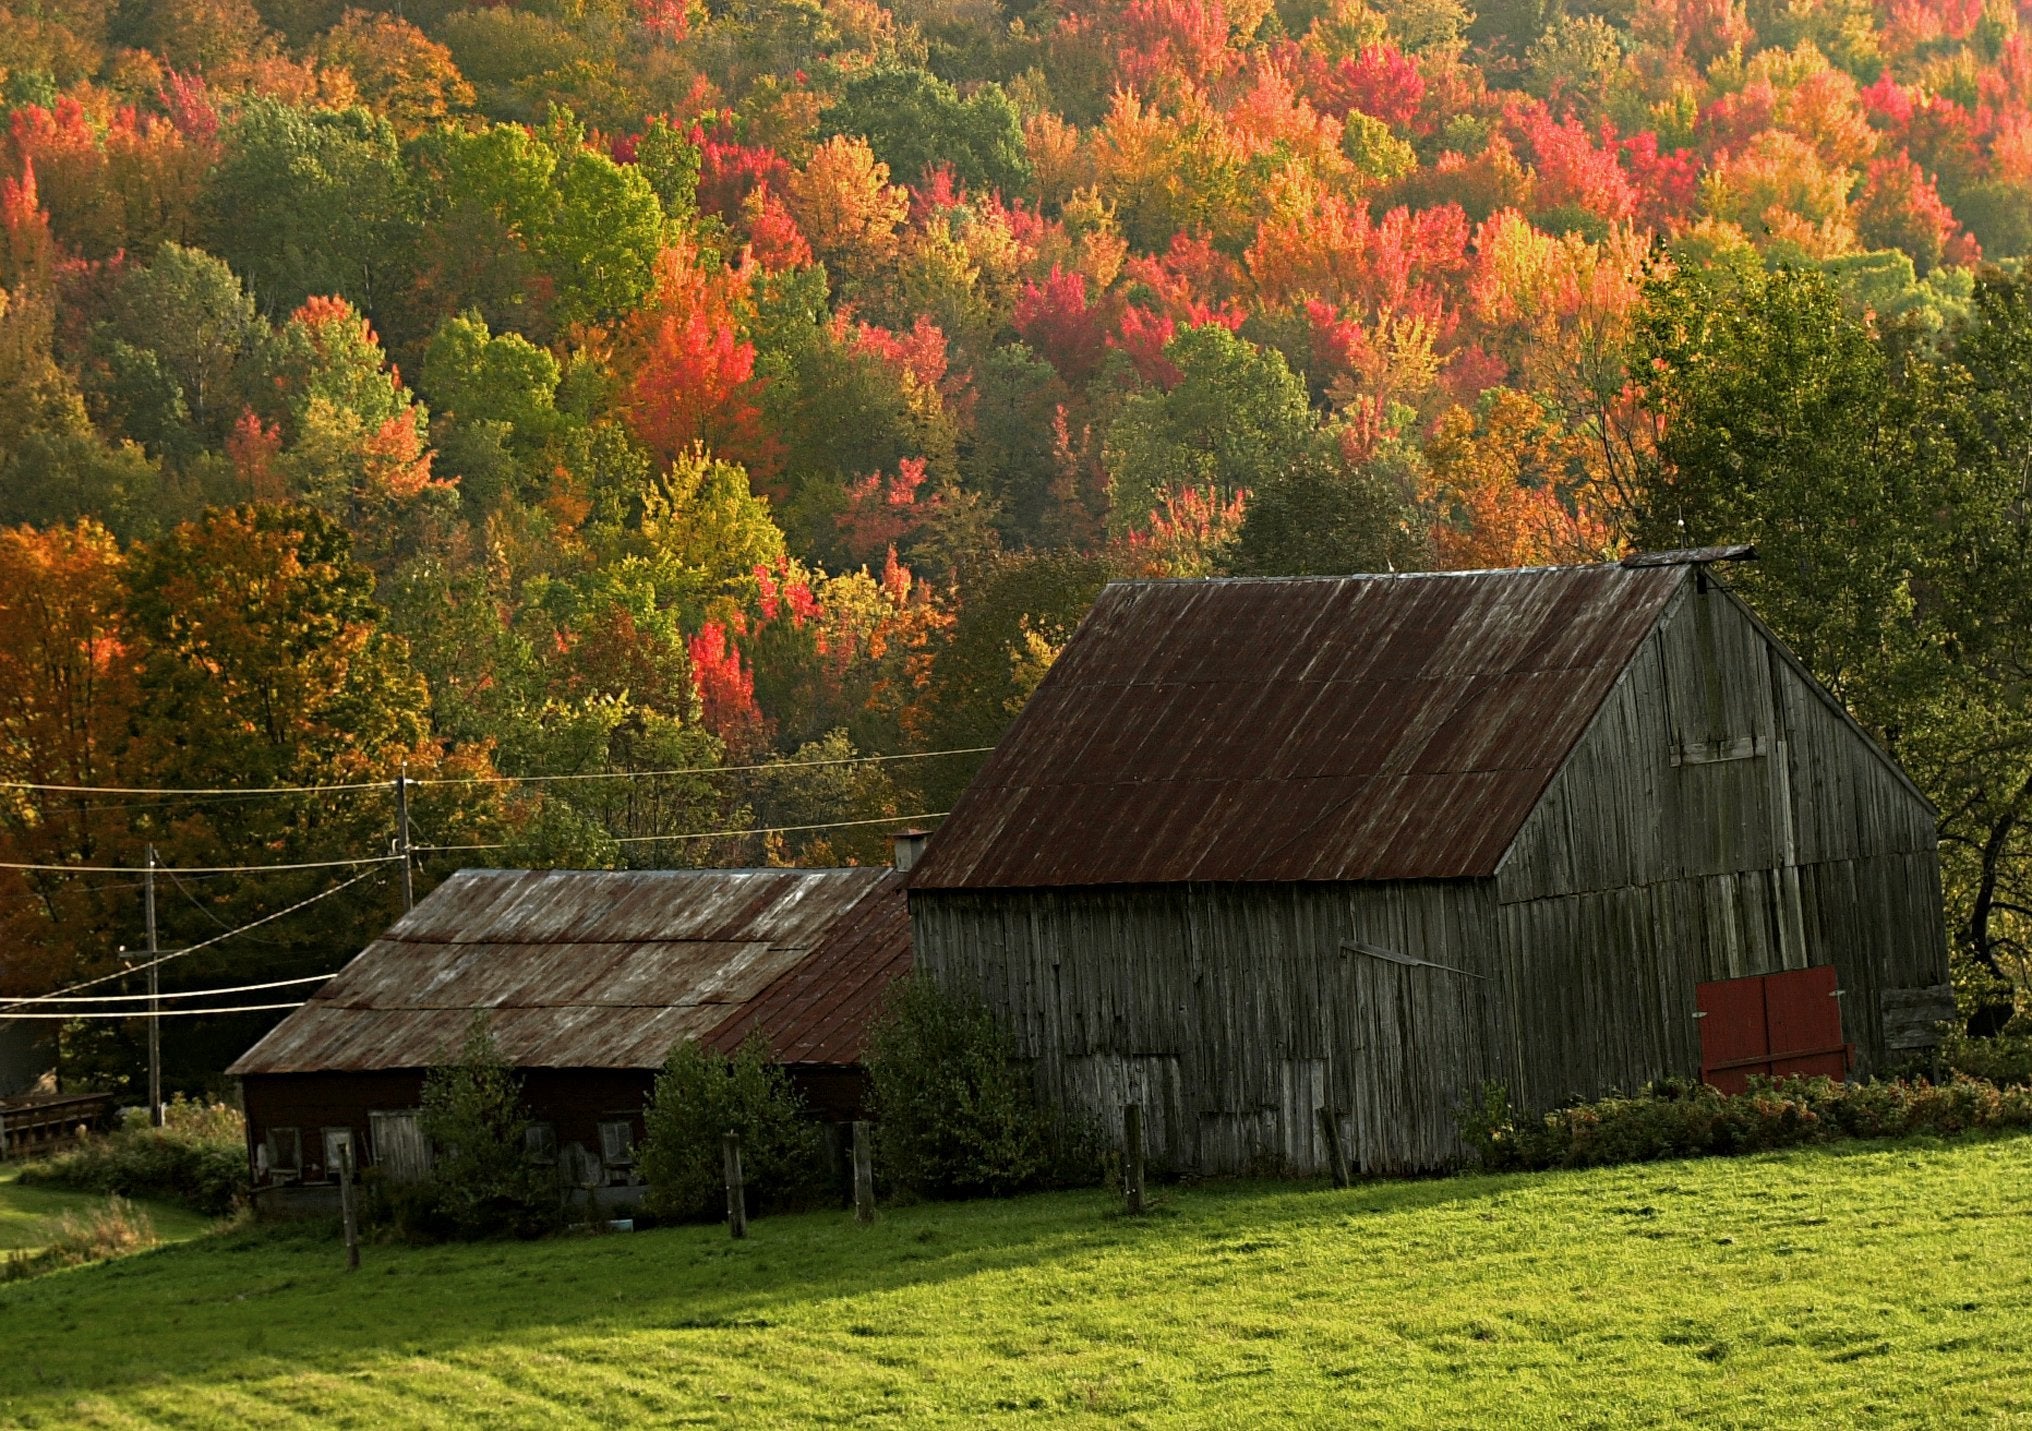 Fall foliage scene in Vermont